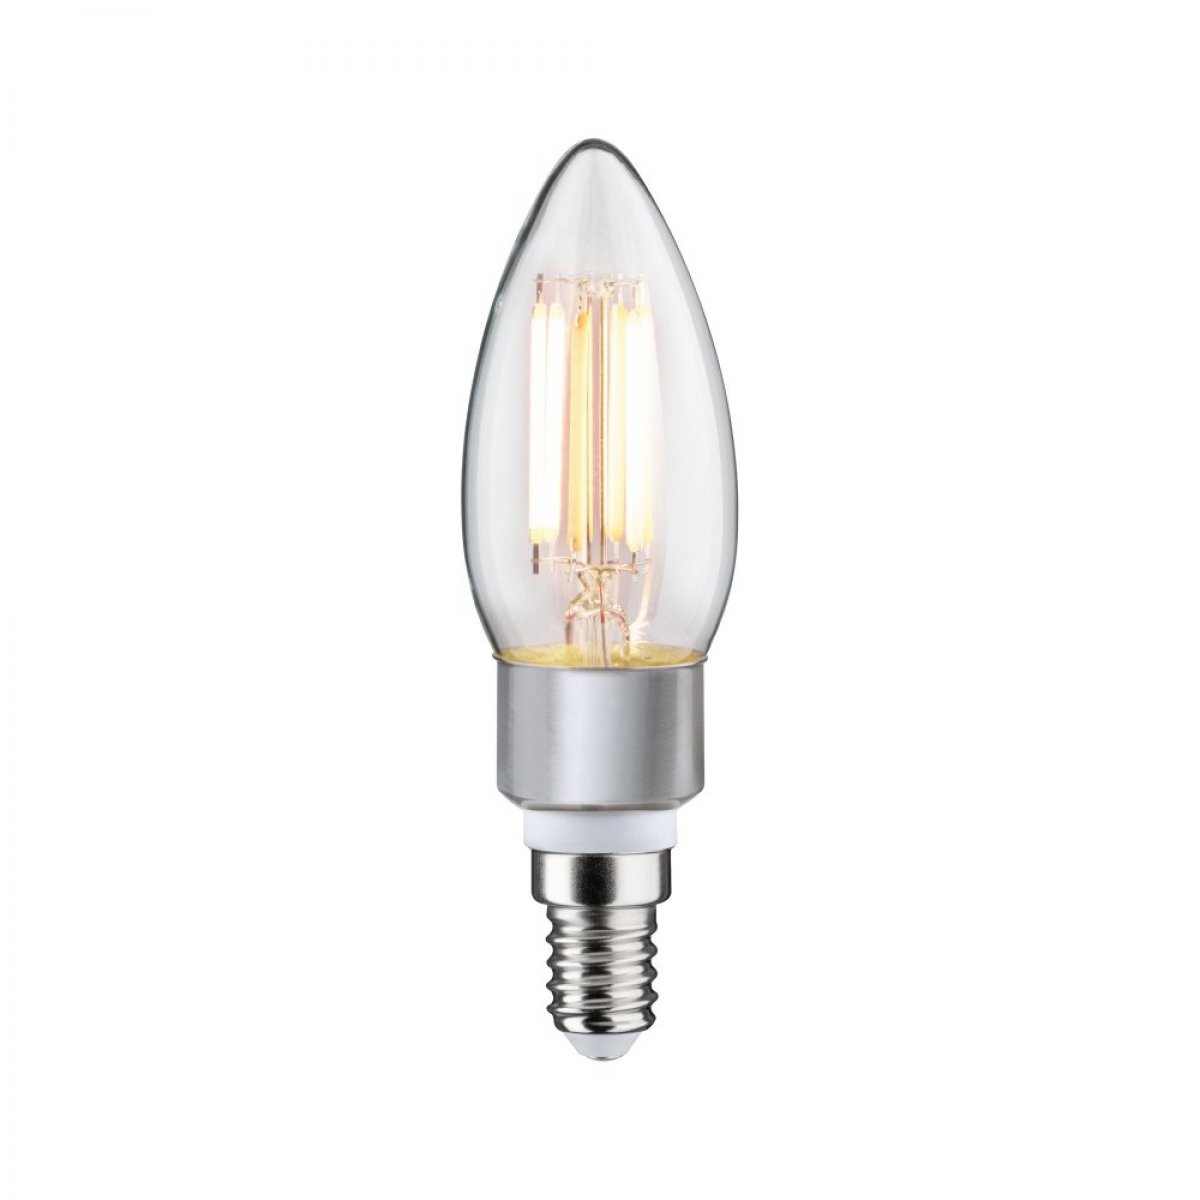 PAULMANN LICHT LED Fil Kerze lm 470 Leuchtmittel 5 Watt Goldlicht/Warmweiß E14